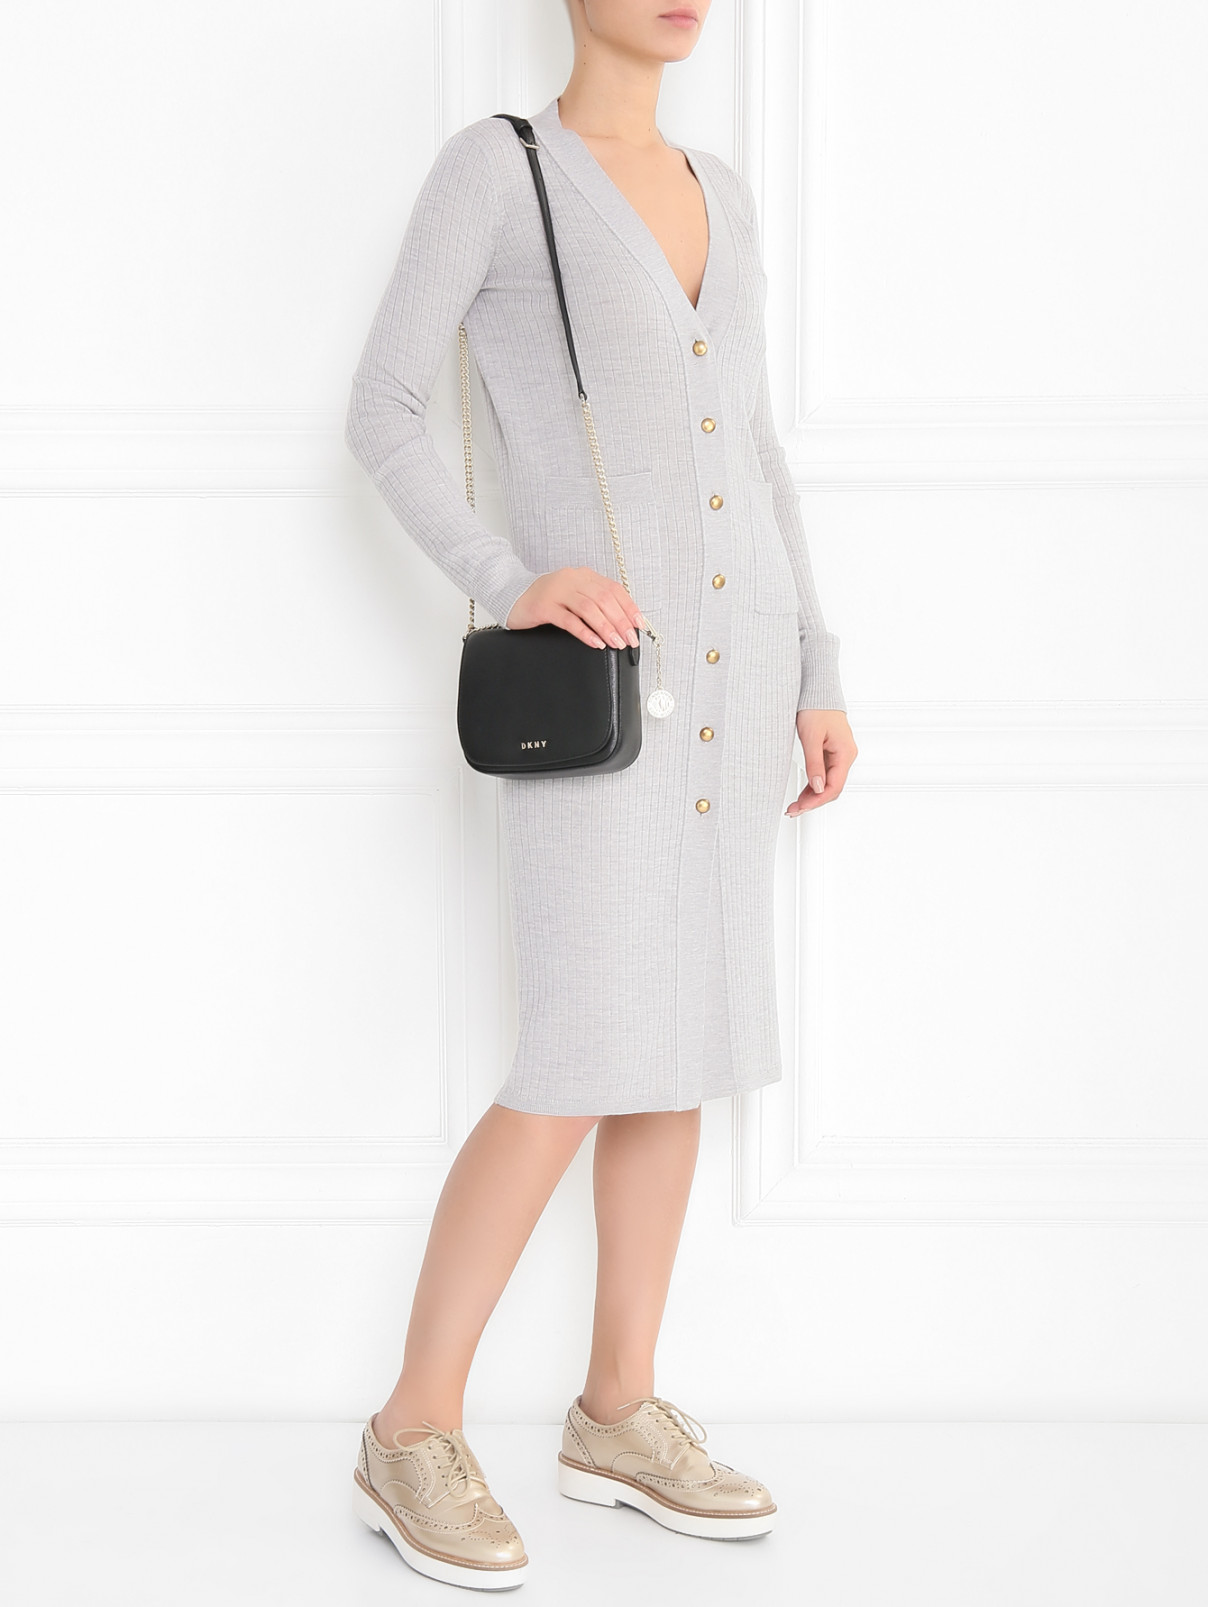 Платье-миди из шерсти фактурной вязки Mo&Co  –  Модель Общий вид  – Цвет:  Серый